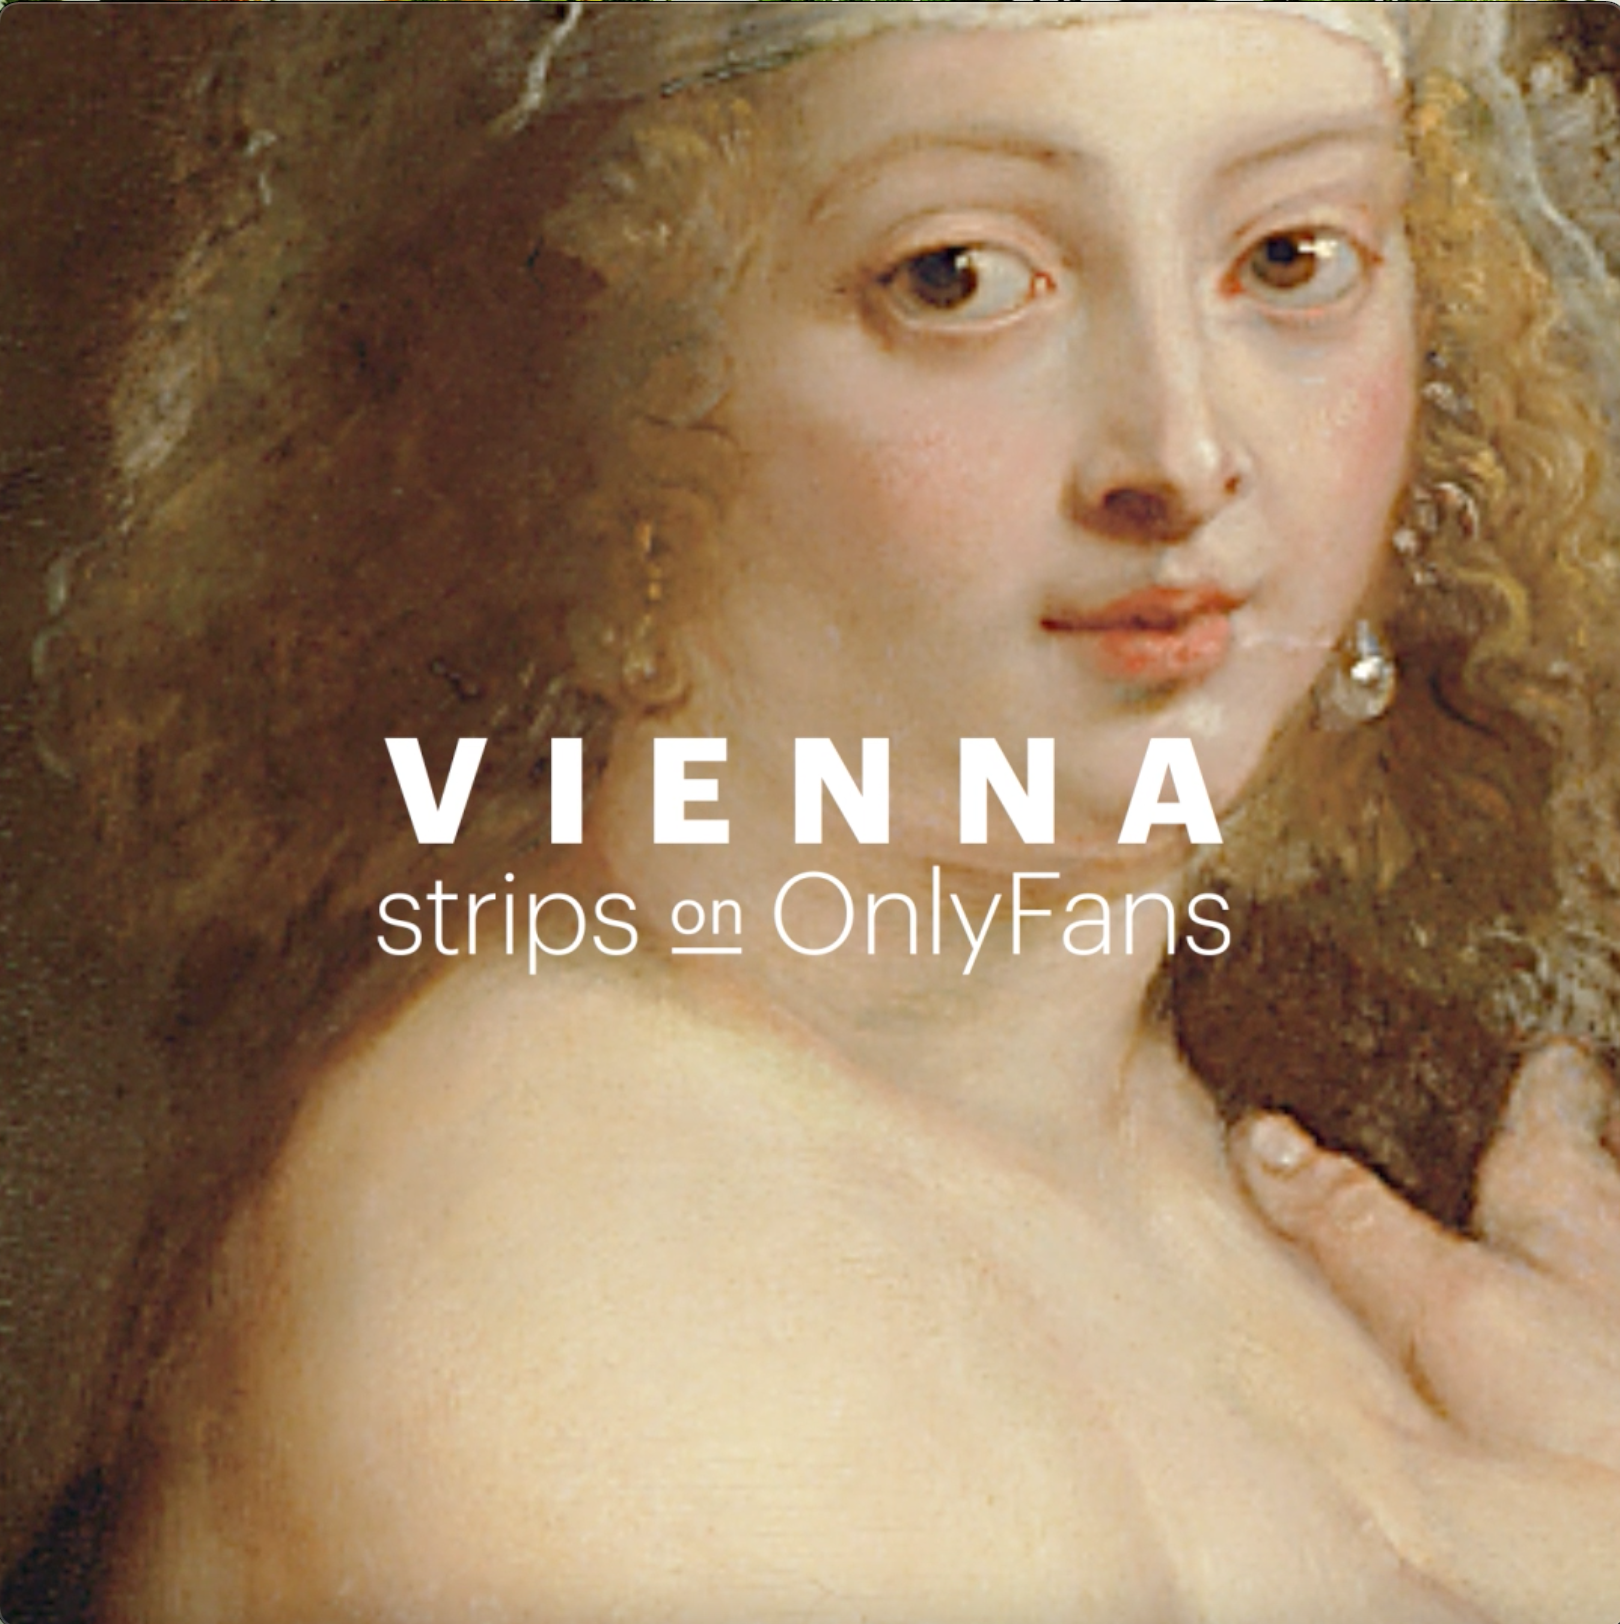 Vienna strips on OnlyFans - Venus von Willendorf © Naturhistorisches Museum Vienna, Alice Schumacher. png